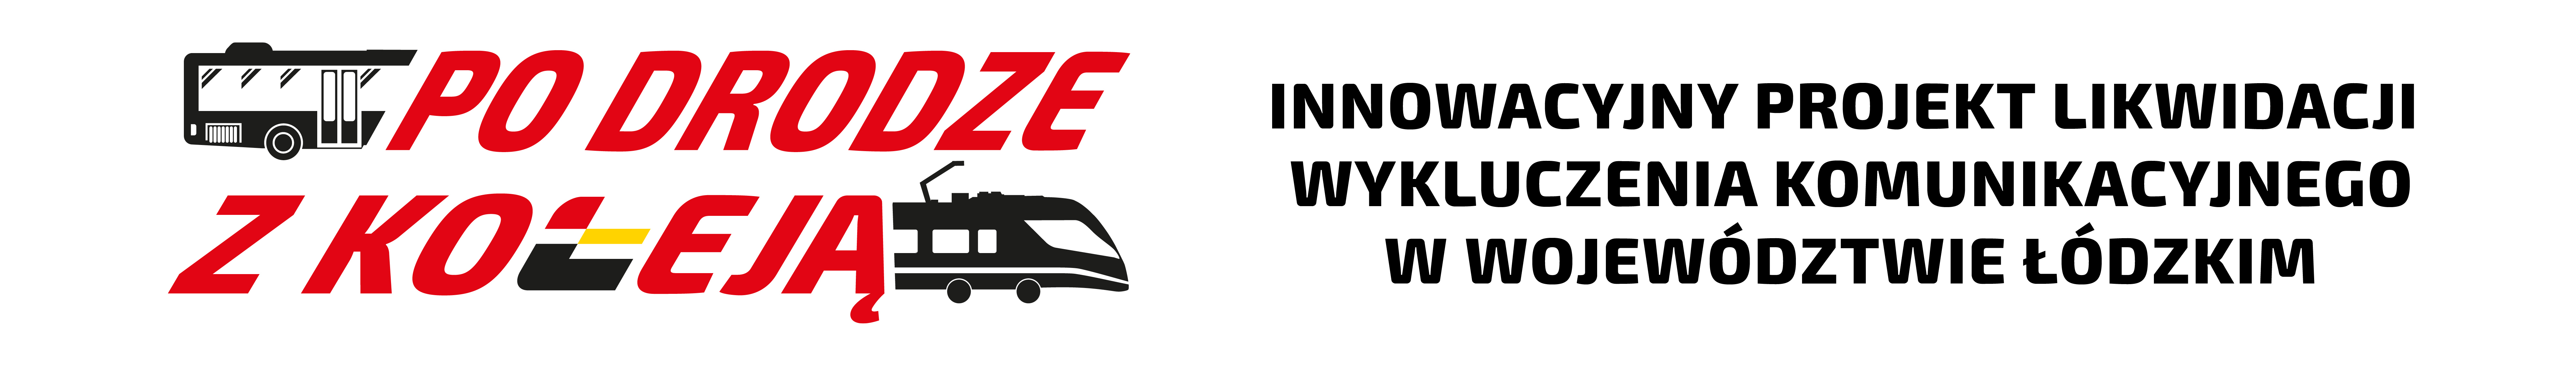 Logo "Po drodze z koleją". Innowacyjny projekt likwidacji wyklkuczenia komunikacyjnego w województwie łódzkim.